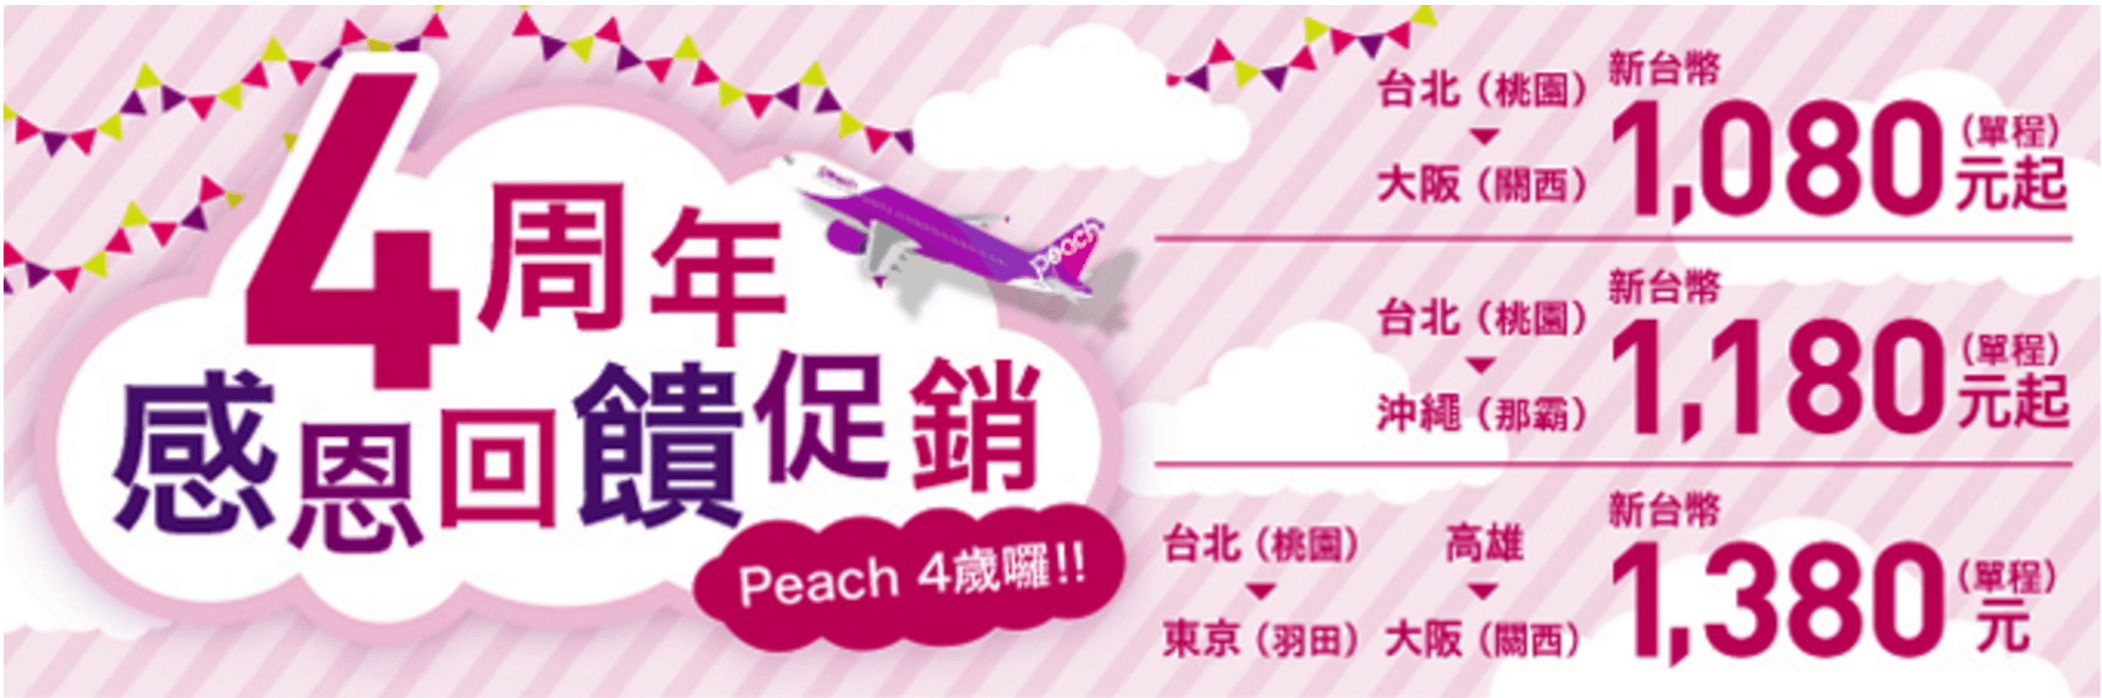 Peach-樂桃航空-四週年感恩回饋促銷-廉價航空-機票